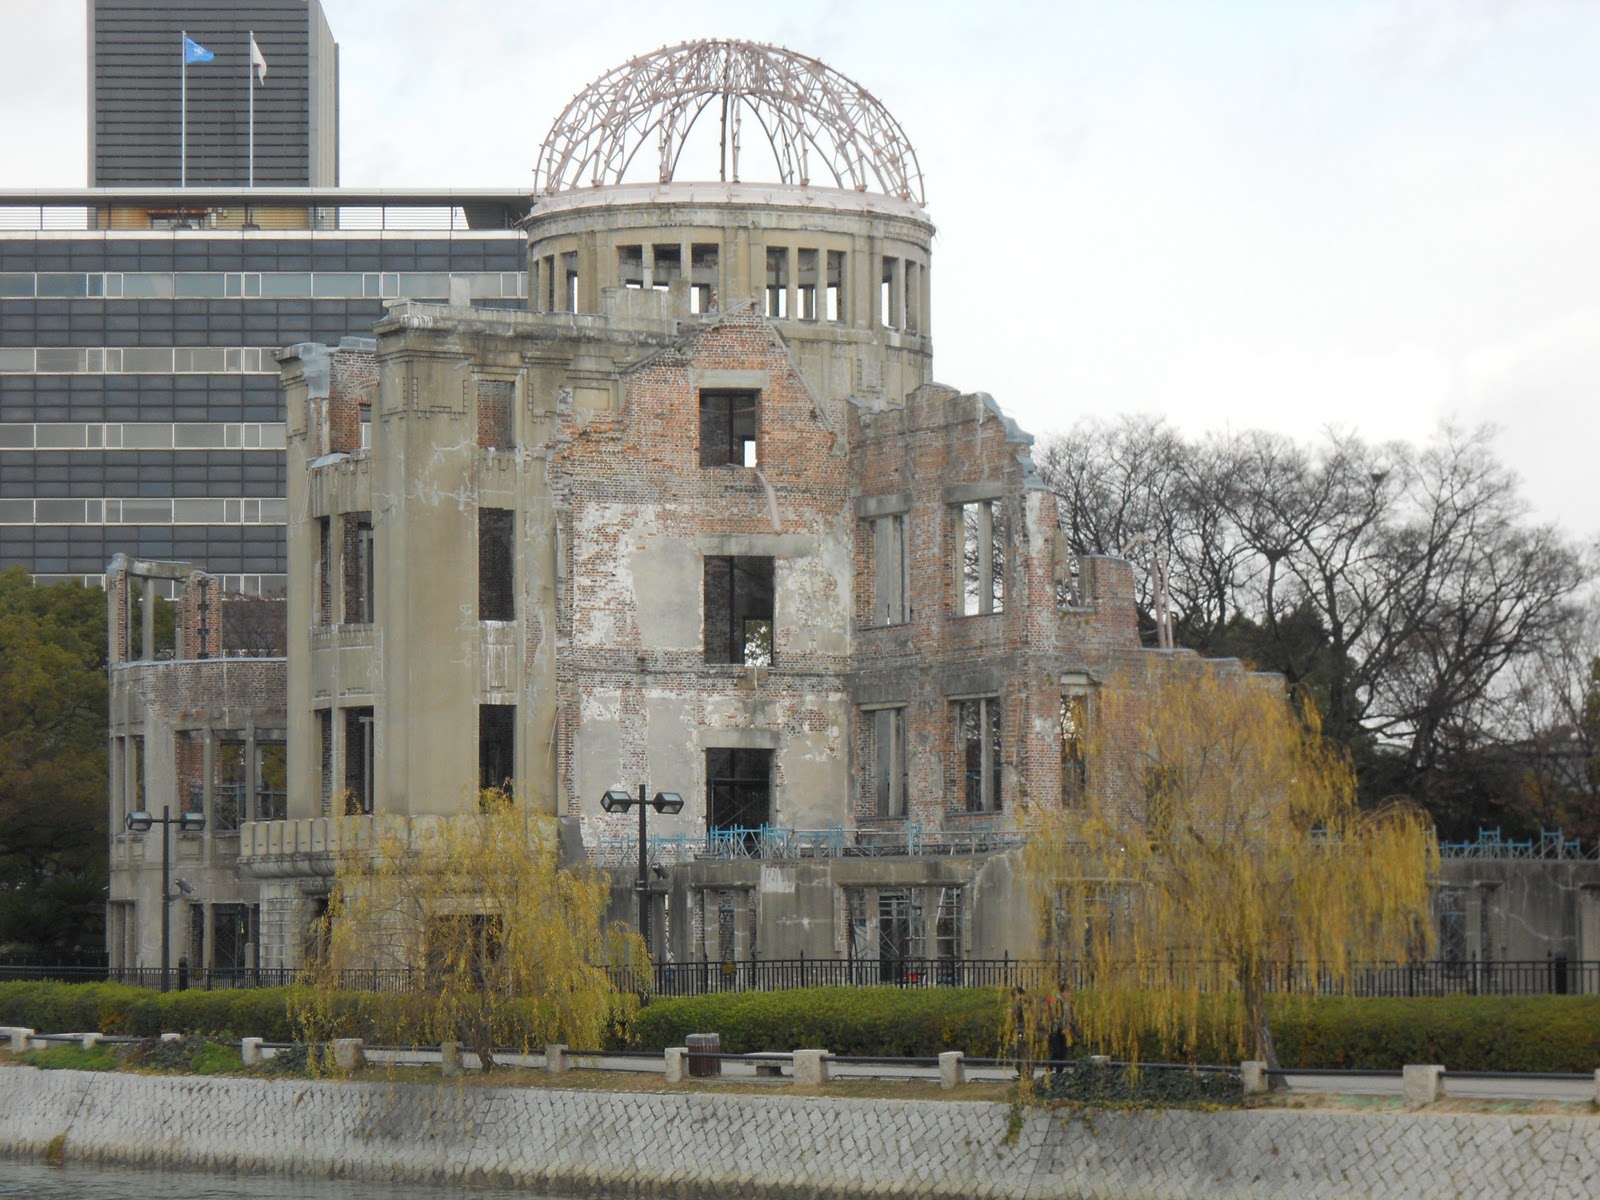 Public disgrace in Hiroshima